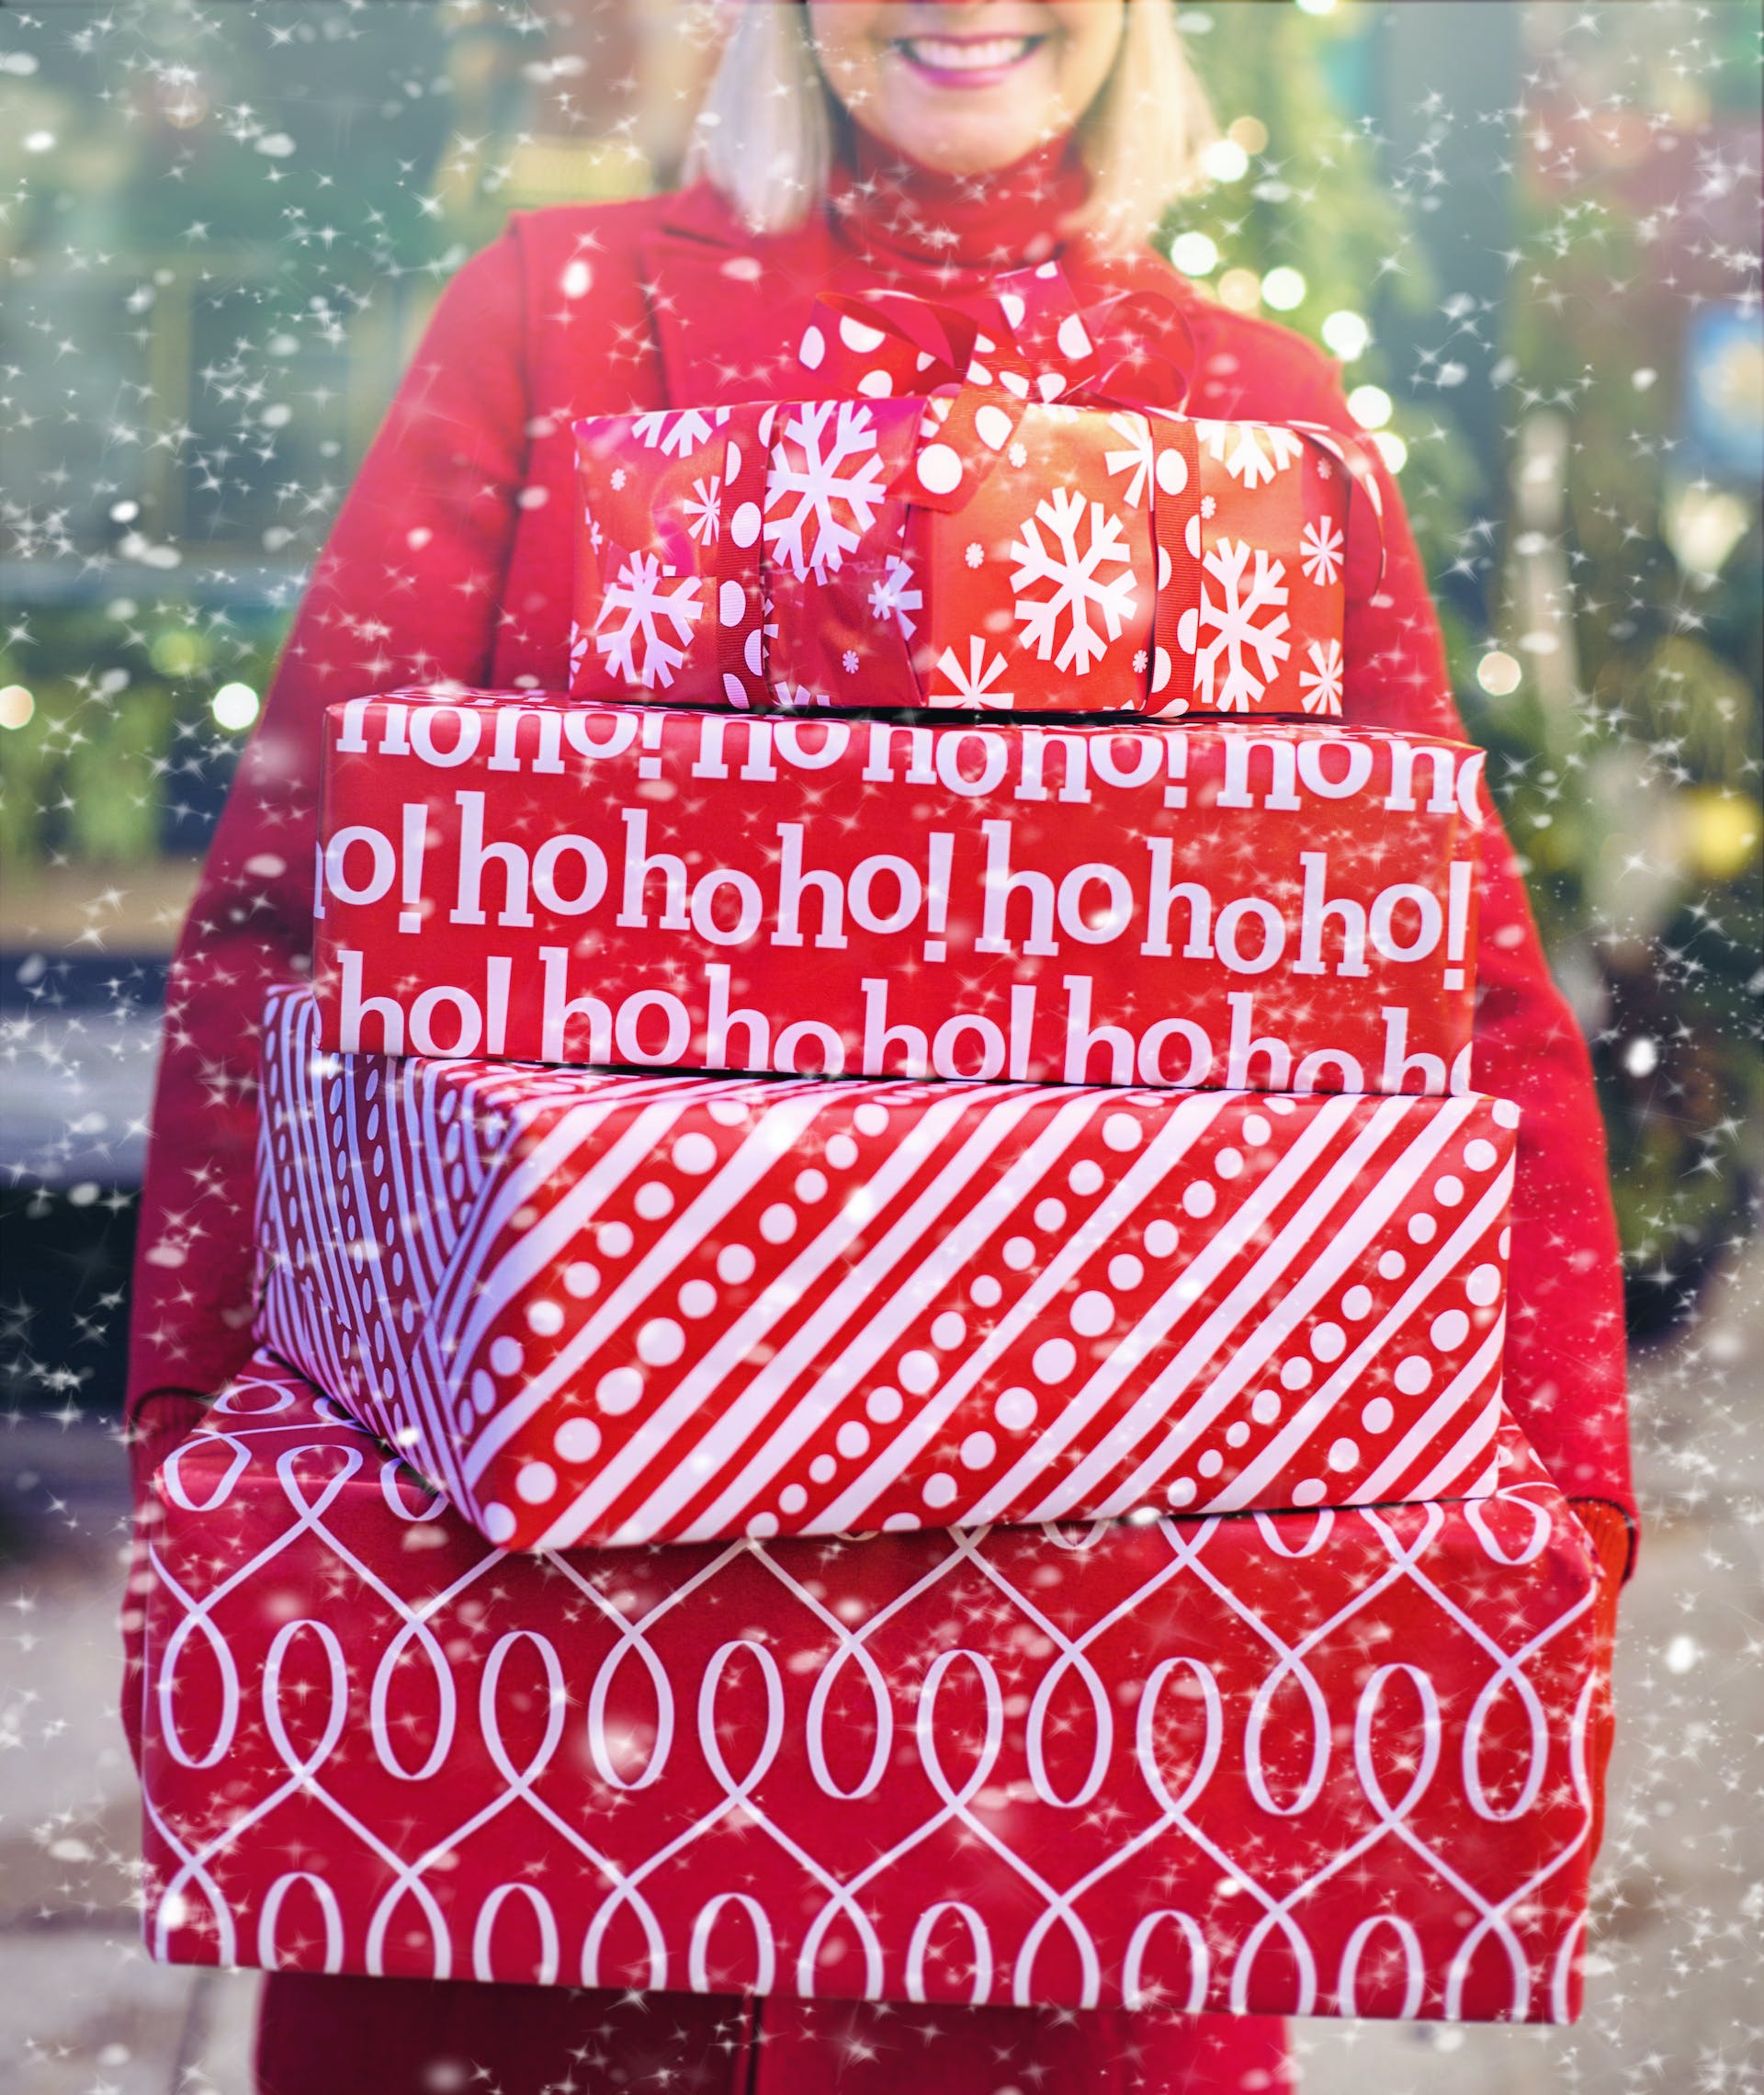 Eine Frau mit großen Weihnachtsgeschenkkartons | Quelle: Pexels